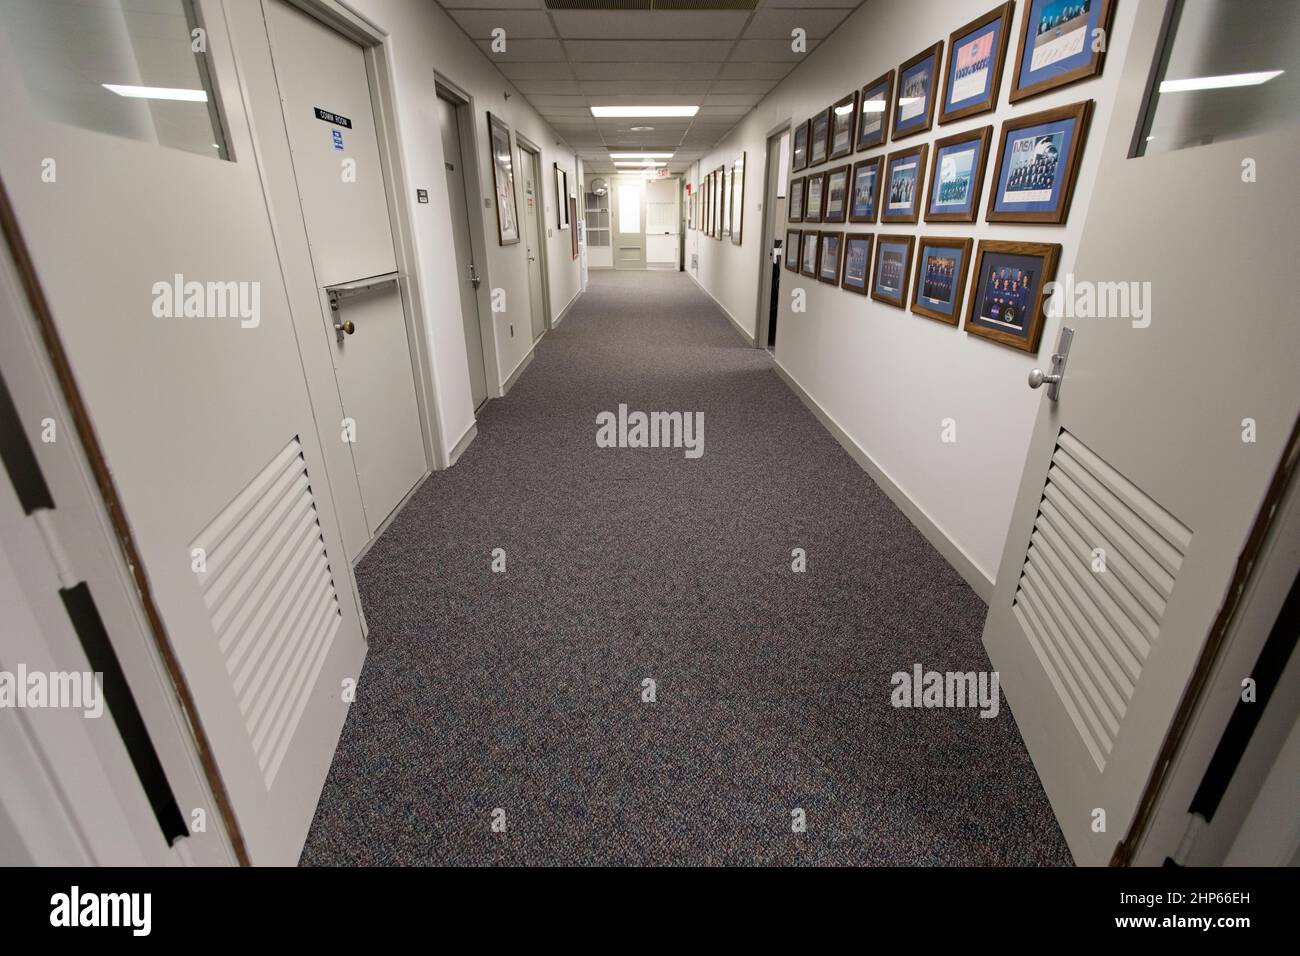 Le couloir des quartiers des astronautes du Kennedy Space Center en Floride reflète une nouvelle moquette et une nouvelle couche de peinture. Les quartiers d’équipage, situés au troisième étage du bâtiment Neil Armstrong Operations and Checkout, ont récemment été améliorés en vue du retour de Kennedy au vol spatial humain. Banque D'Images